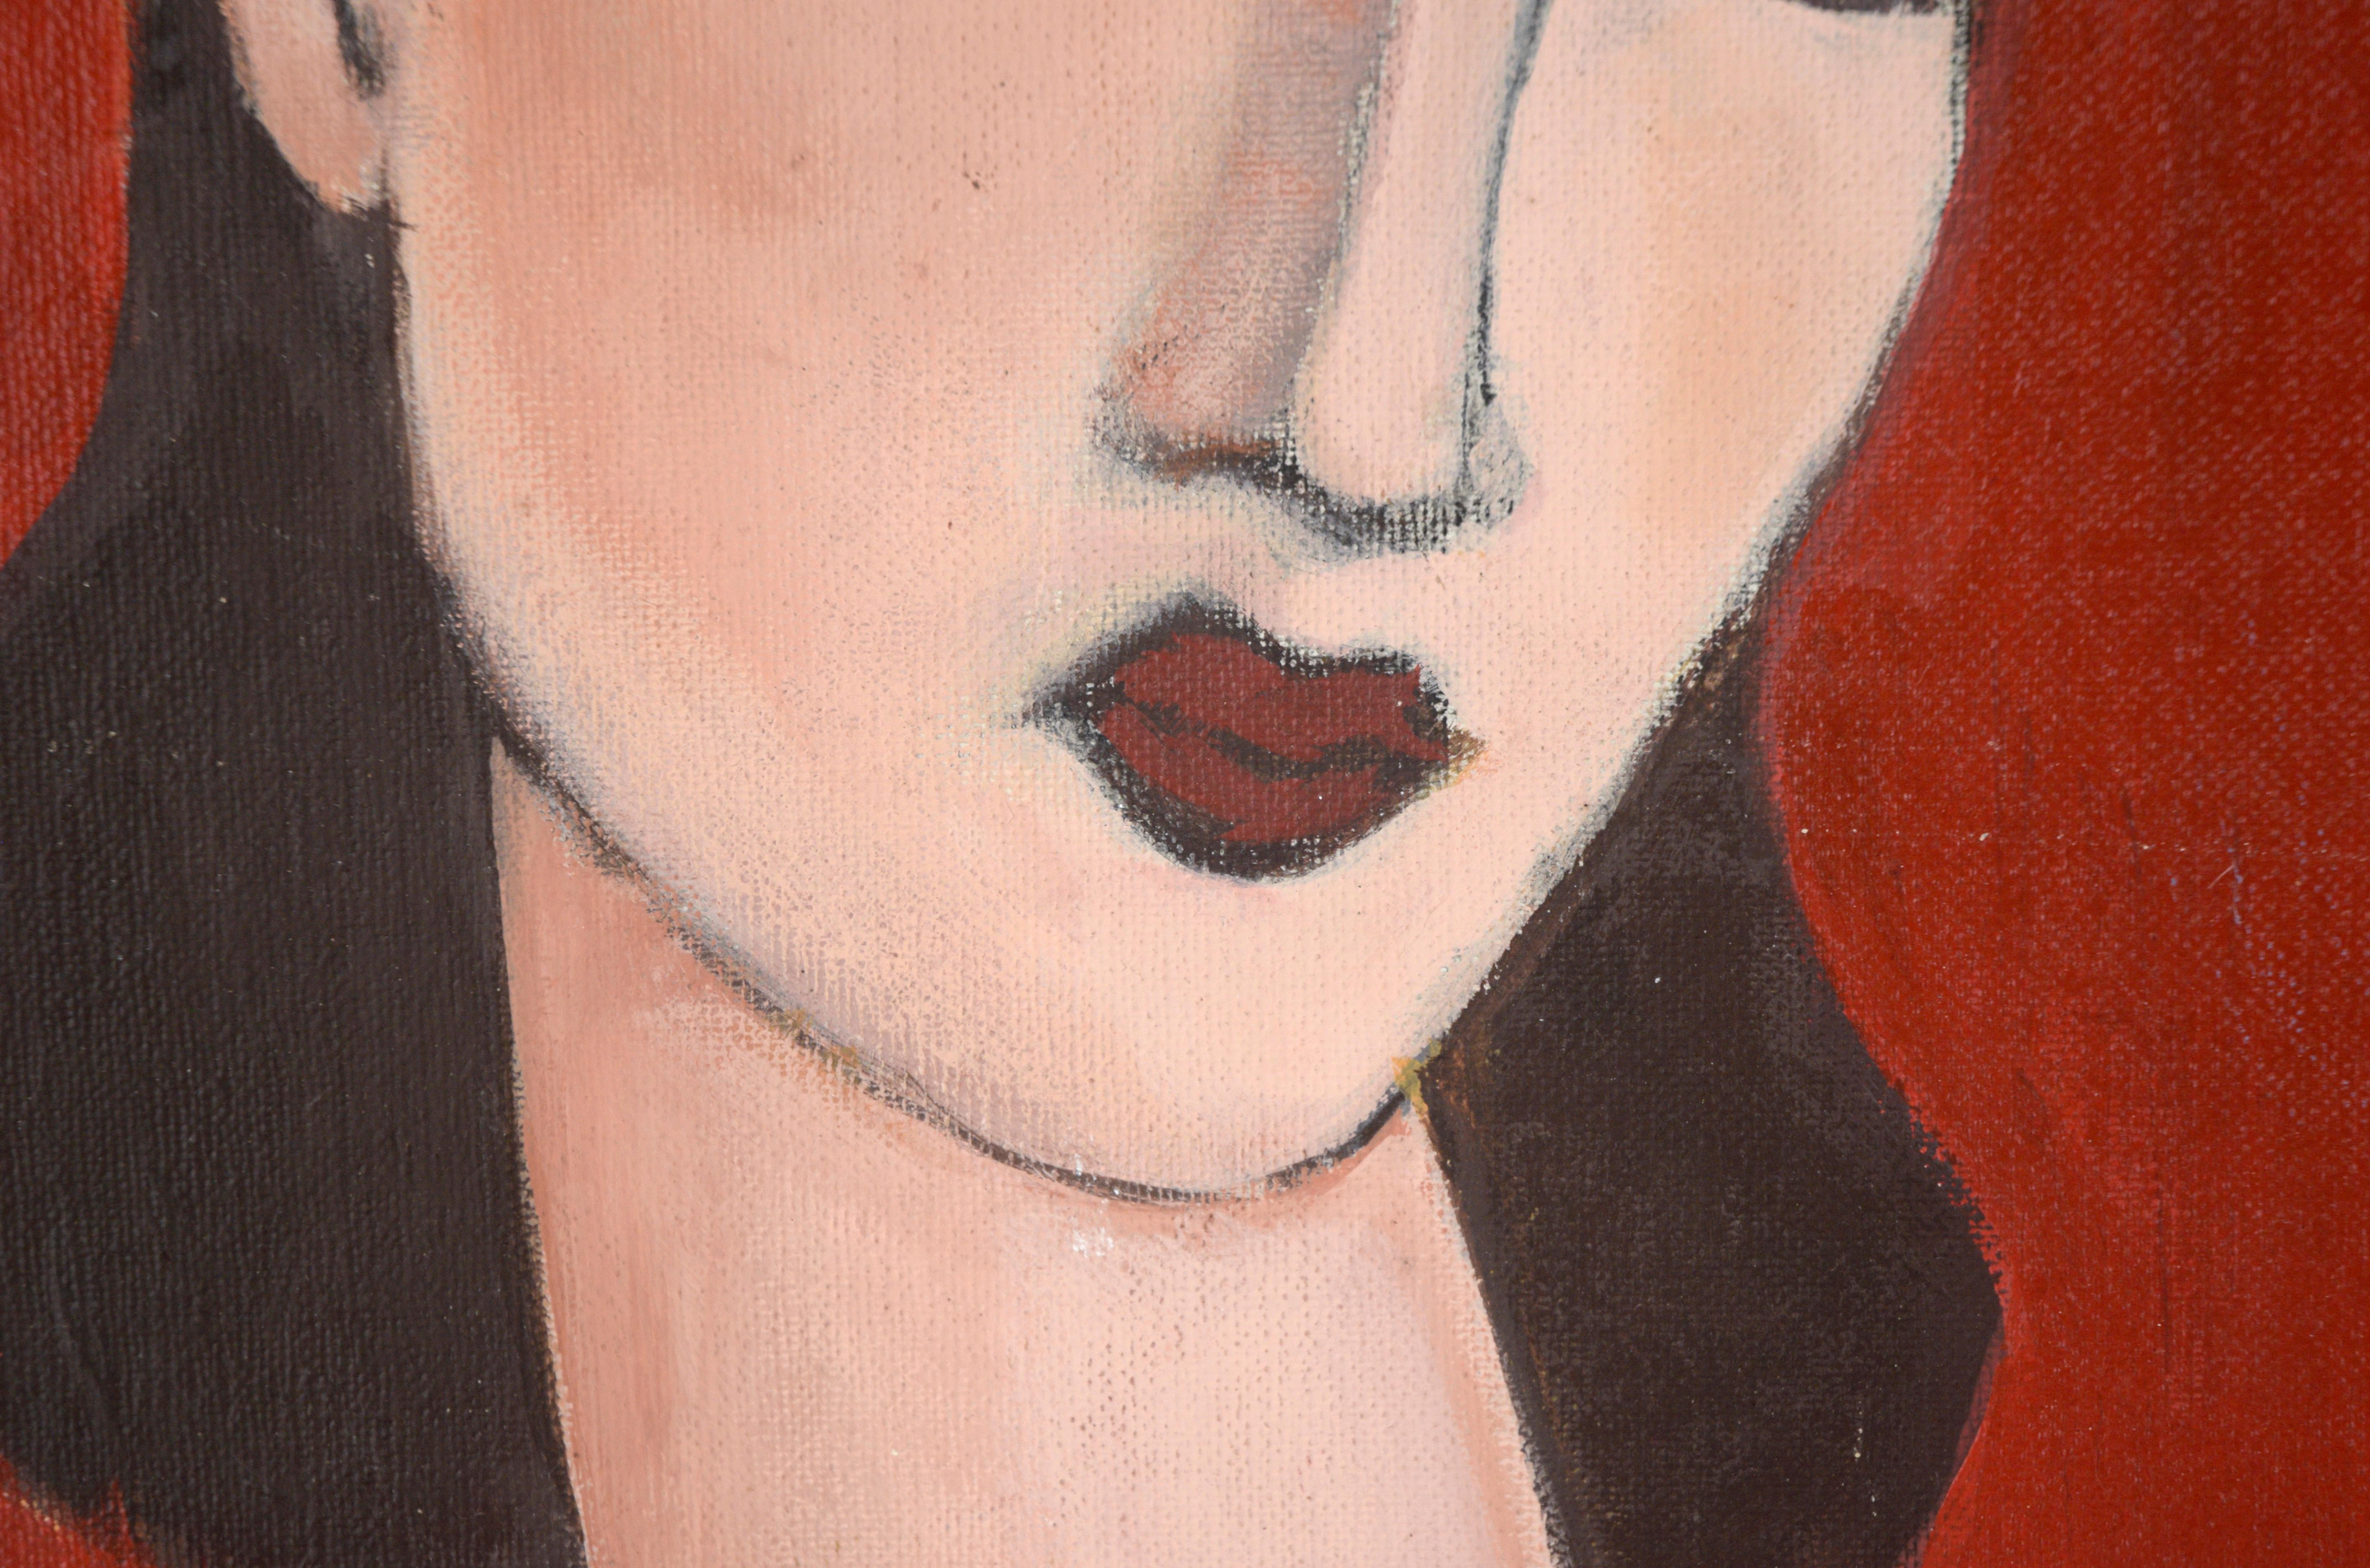 Porträt einer Frau mit braunen Haaren auf rotem Grund in Acryl auf Künstlerpappe

Porträt einer Frau im Stil von Amedeo Modigliani von einem unbekannten Künstler (20. Jahrhundert). Die Frau hat dunkelbraunes Haar, das in der Mitte gescheitelt ist,